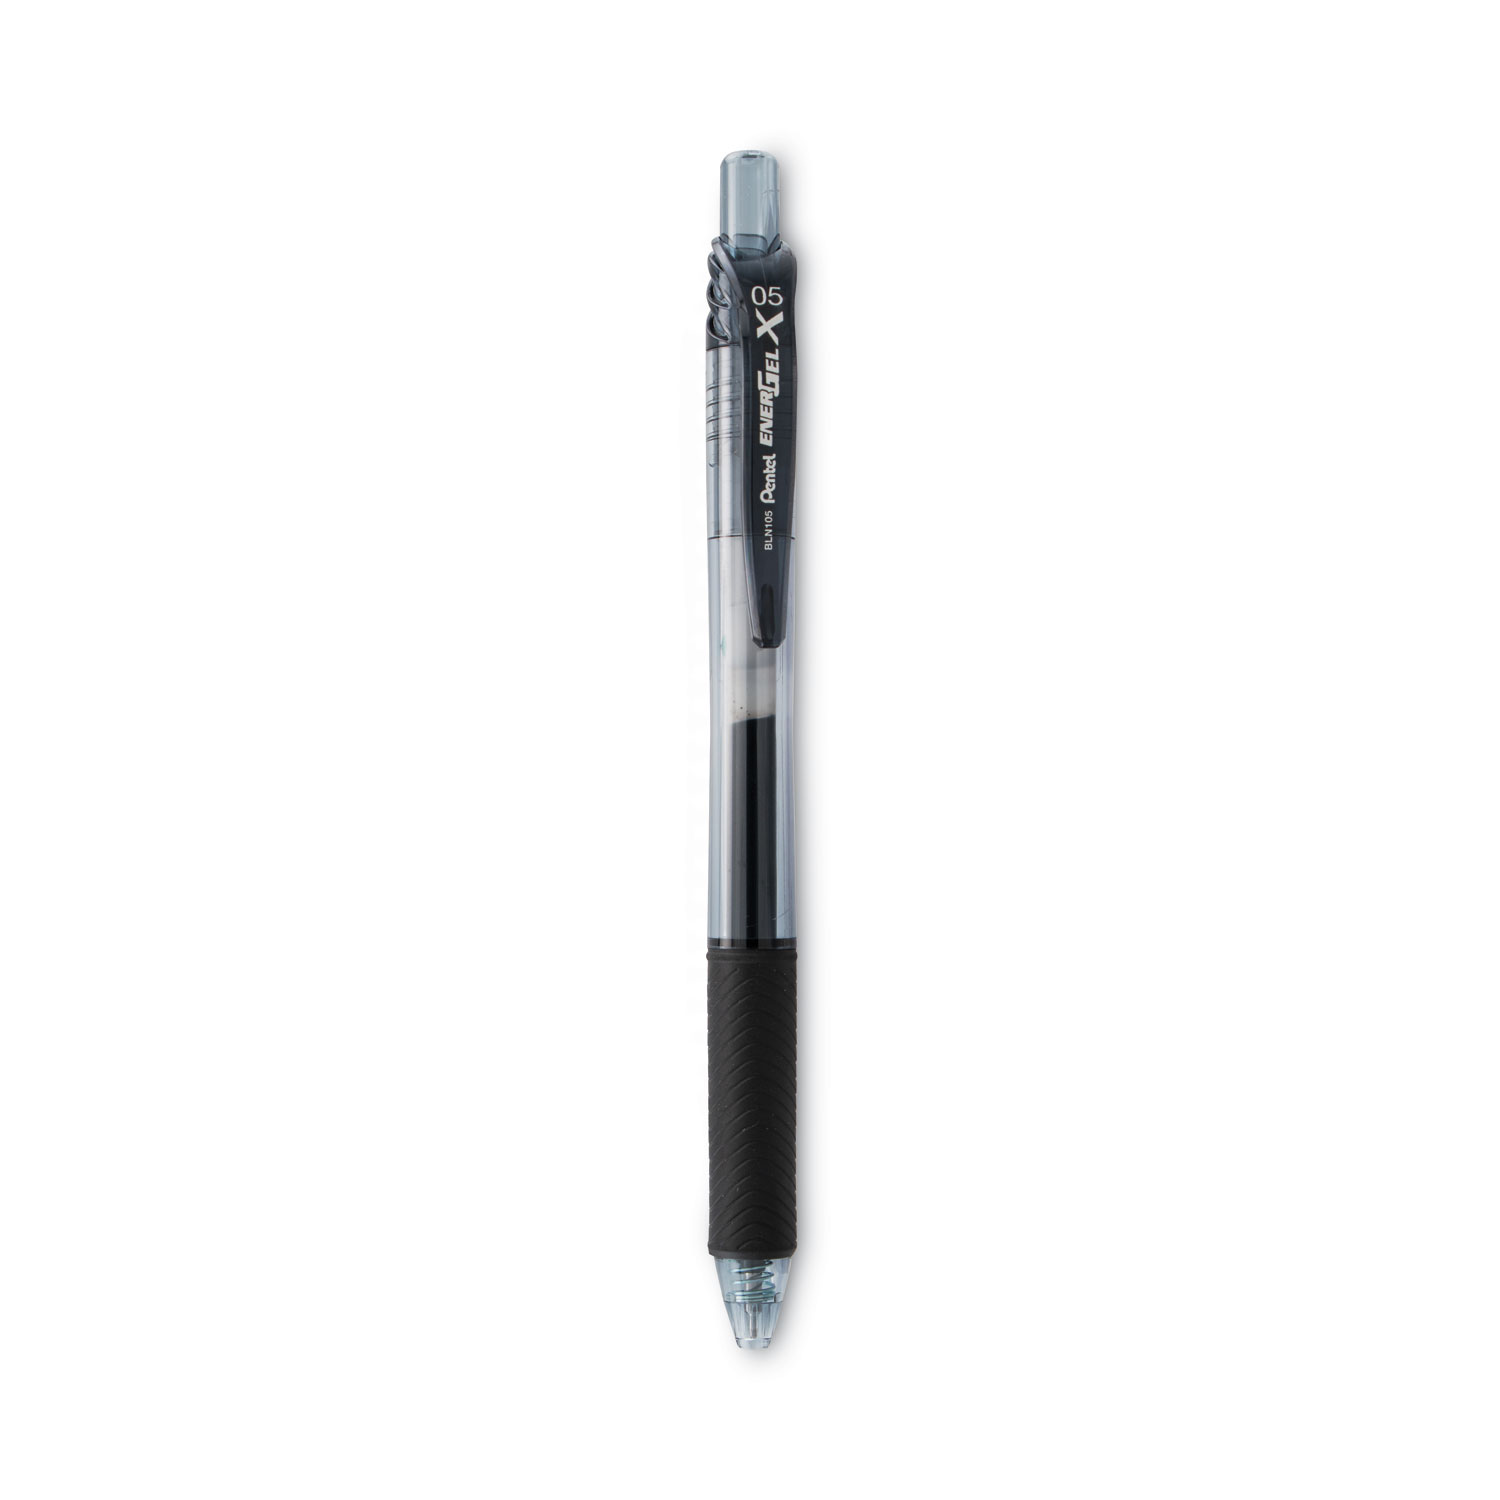 Gel Pens, Black Fine Point Gel Pen for Super Smooth Writing, 0.5mm